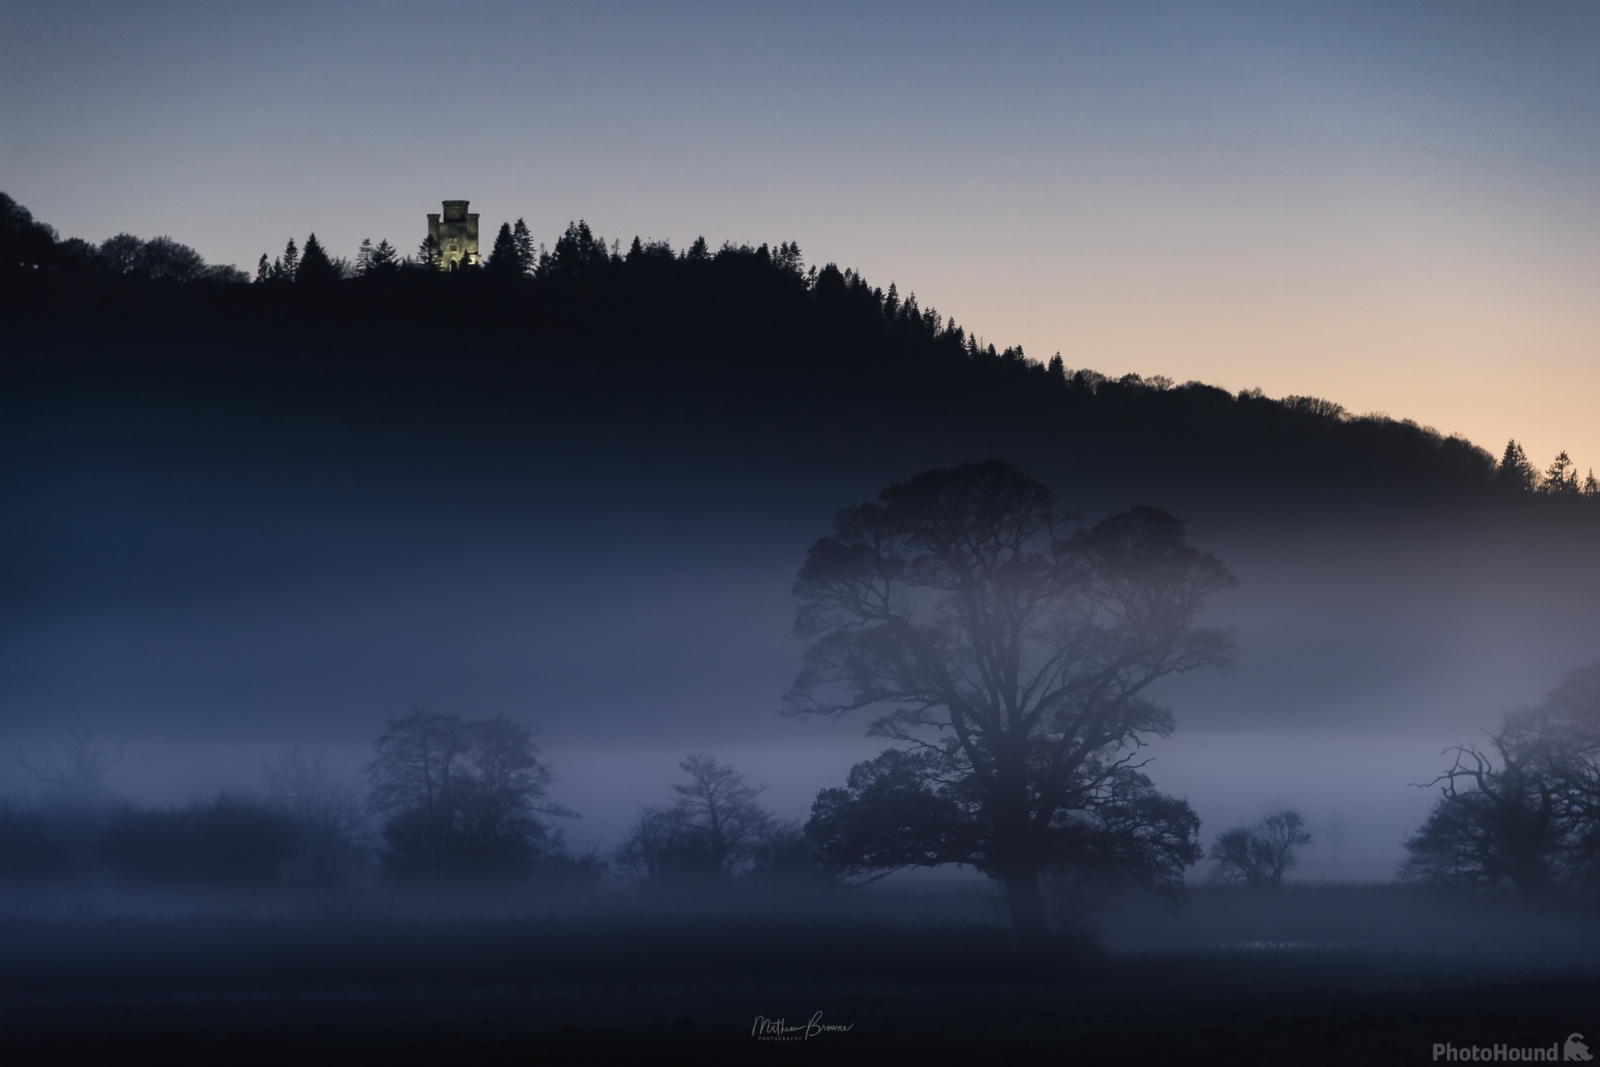 Image of Dryslwyn Castle by Mathew Browne